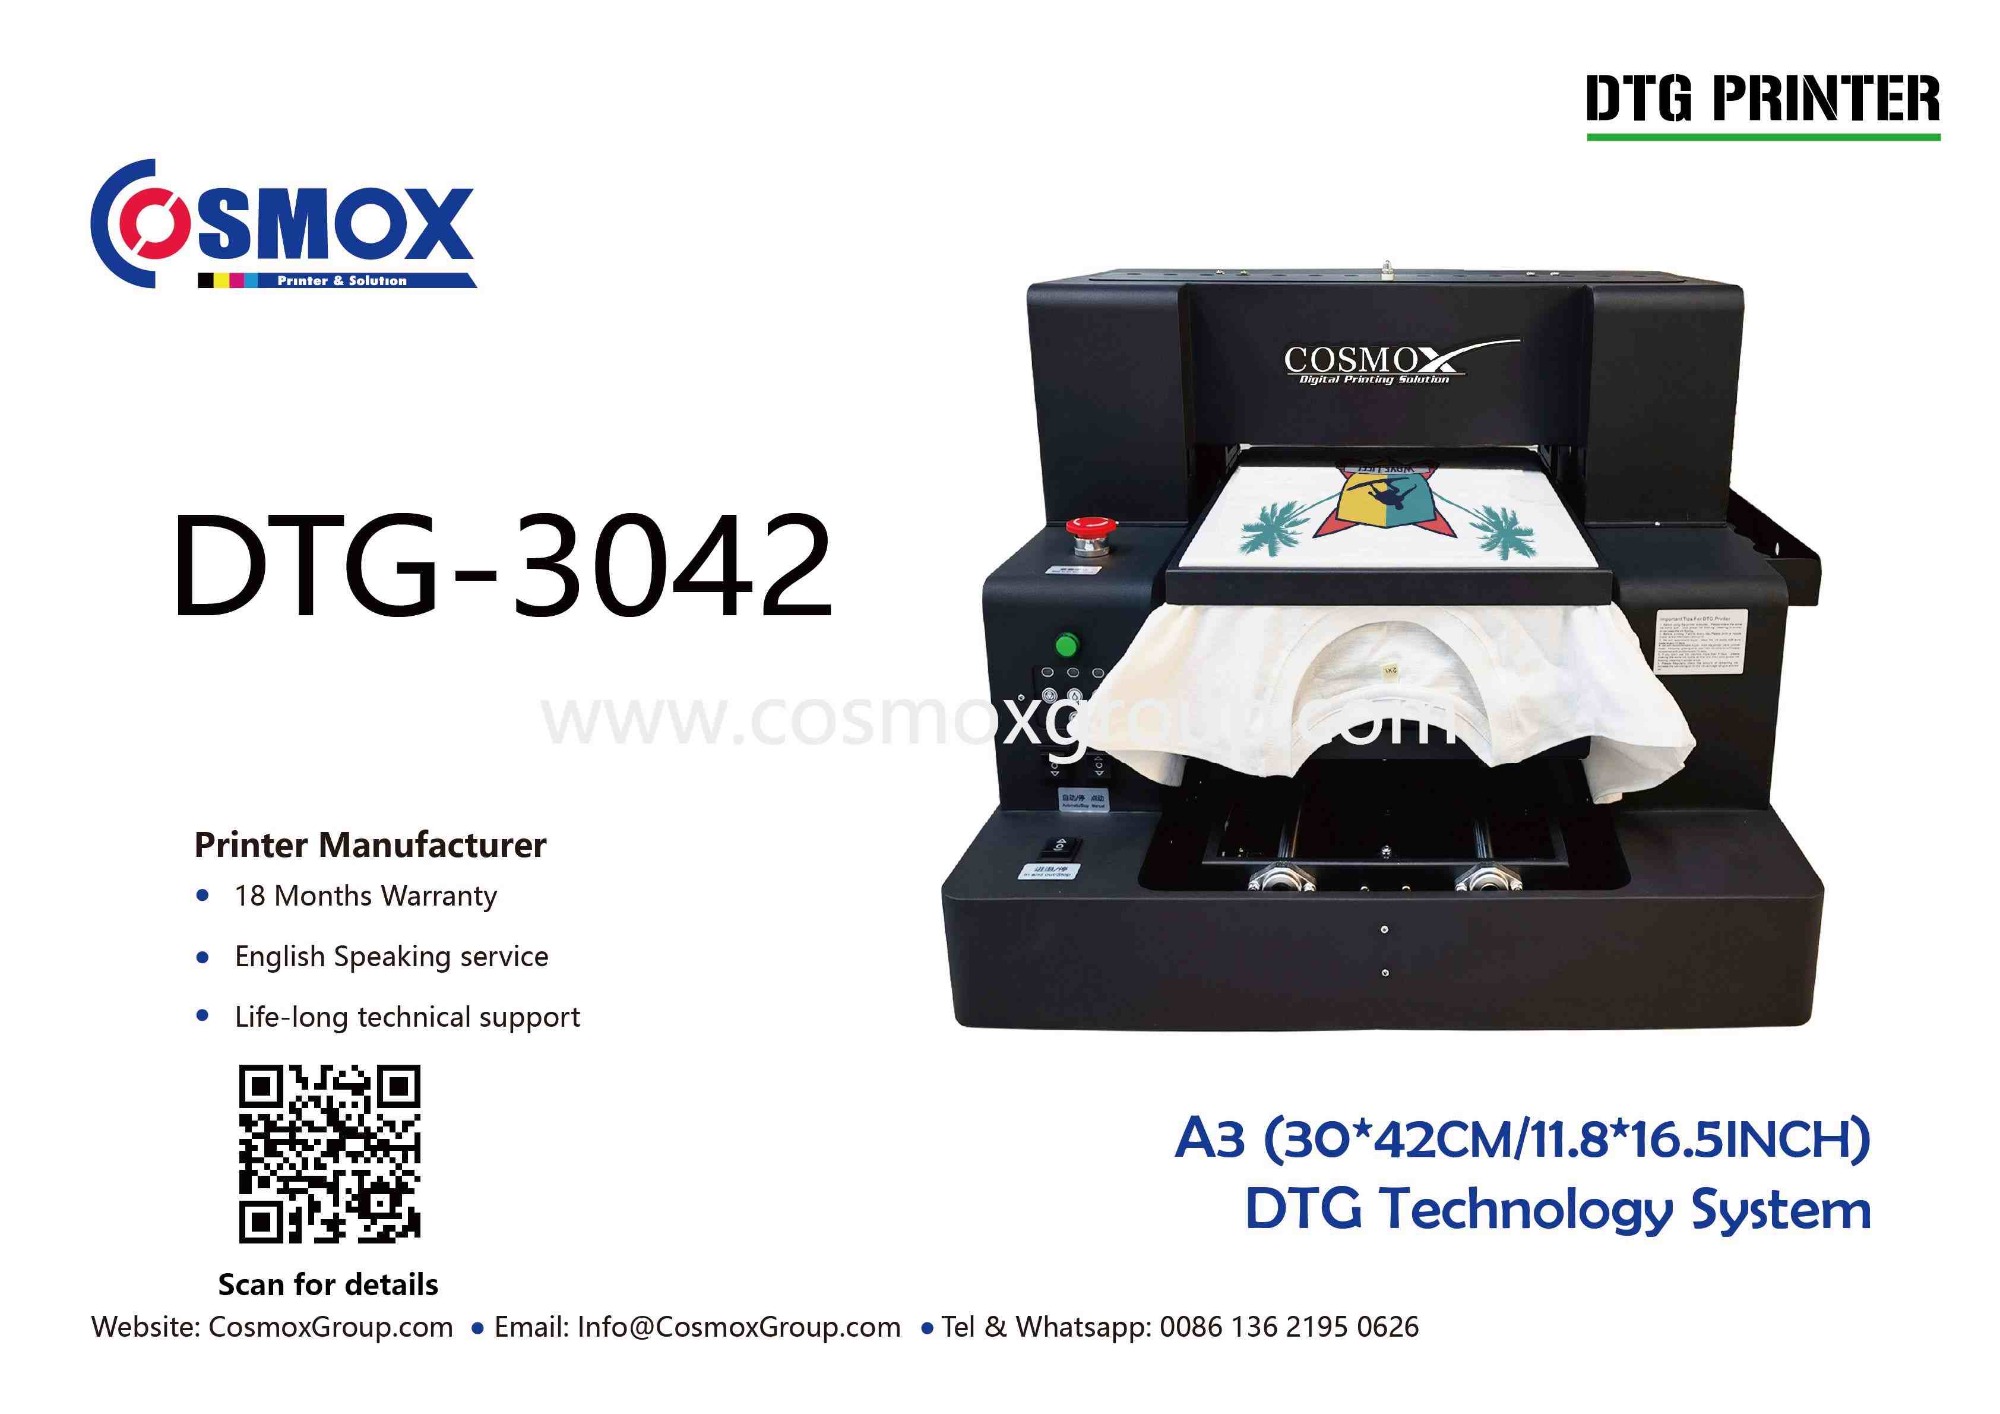 A3 DTF/DTG Printer foil stamping printer L1800